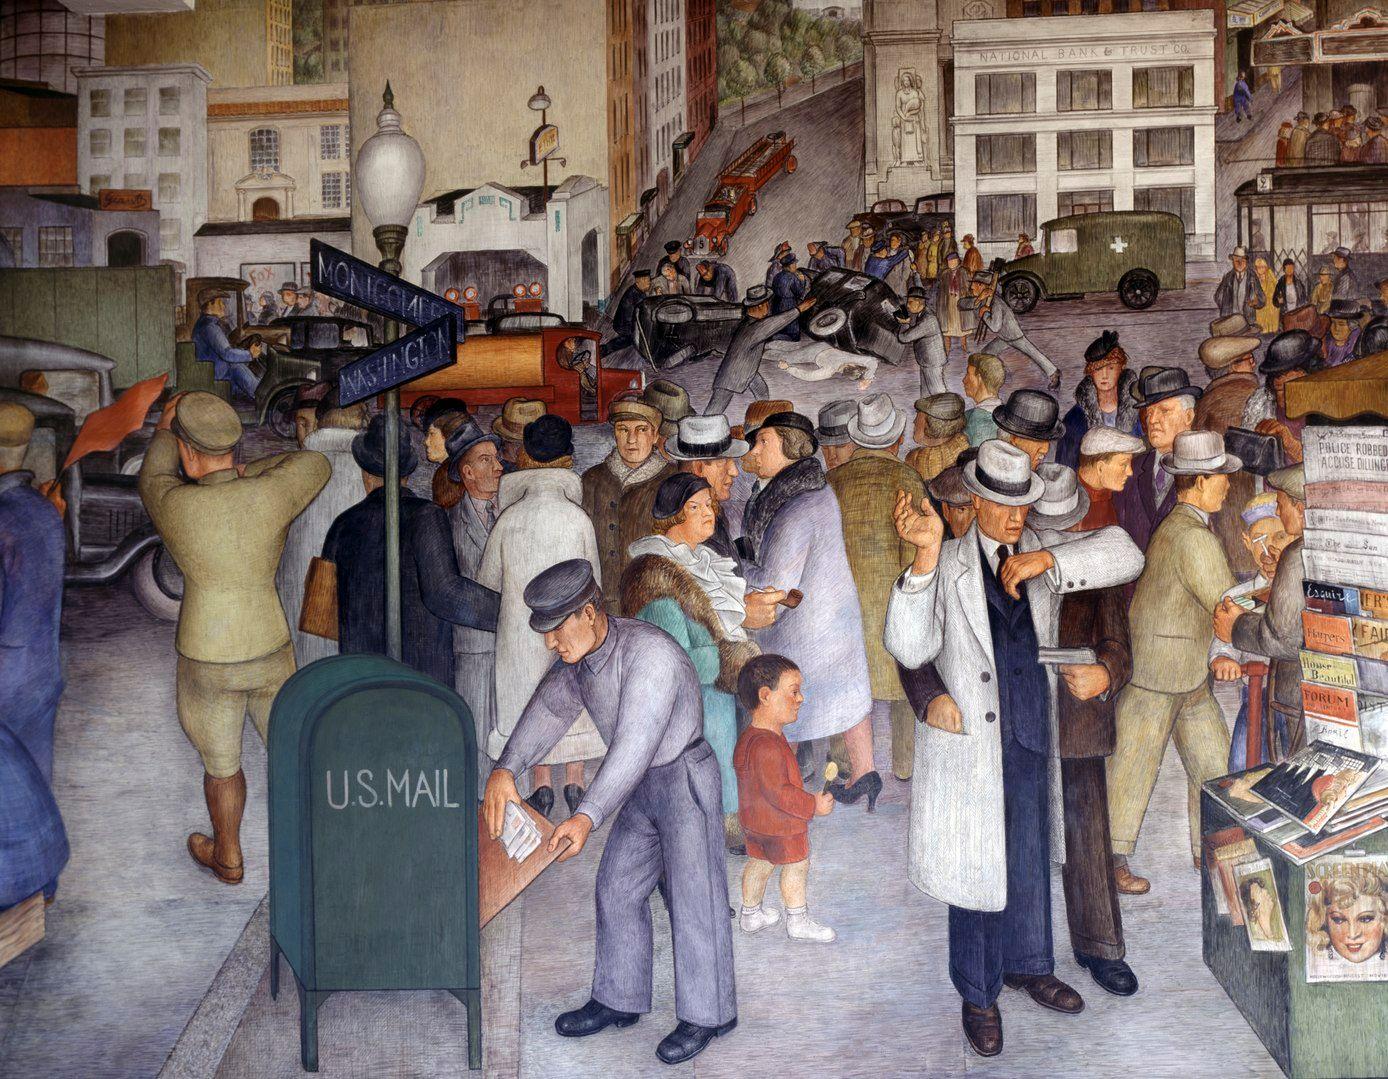 Wandgemälde »California Life« (1934) von Victor Arnautoff, das im Zuge der Works Progress Administration entstand, die nach der Großen Depression Millionen Arbeitslose zu einer Beschäftigung verhalf.